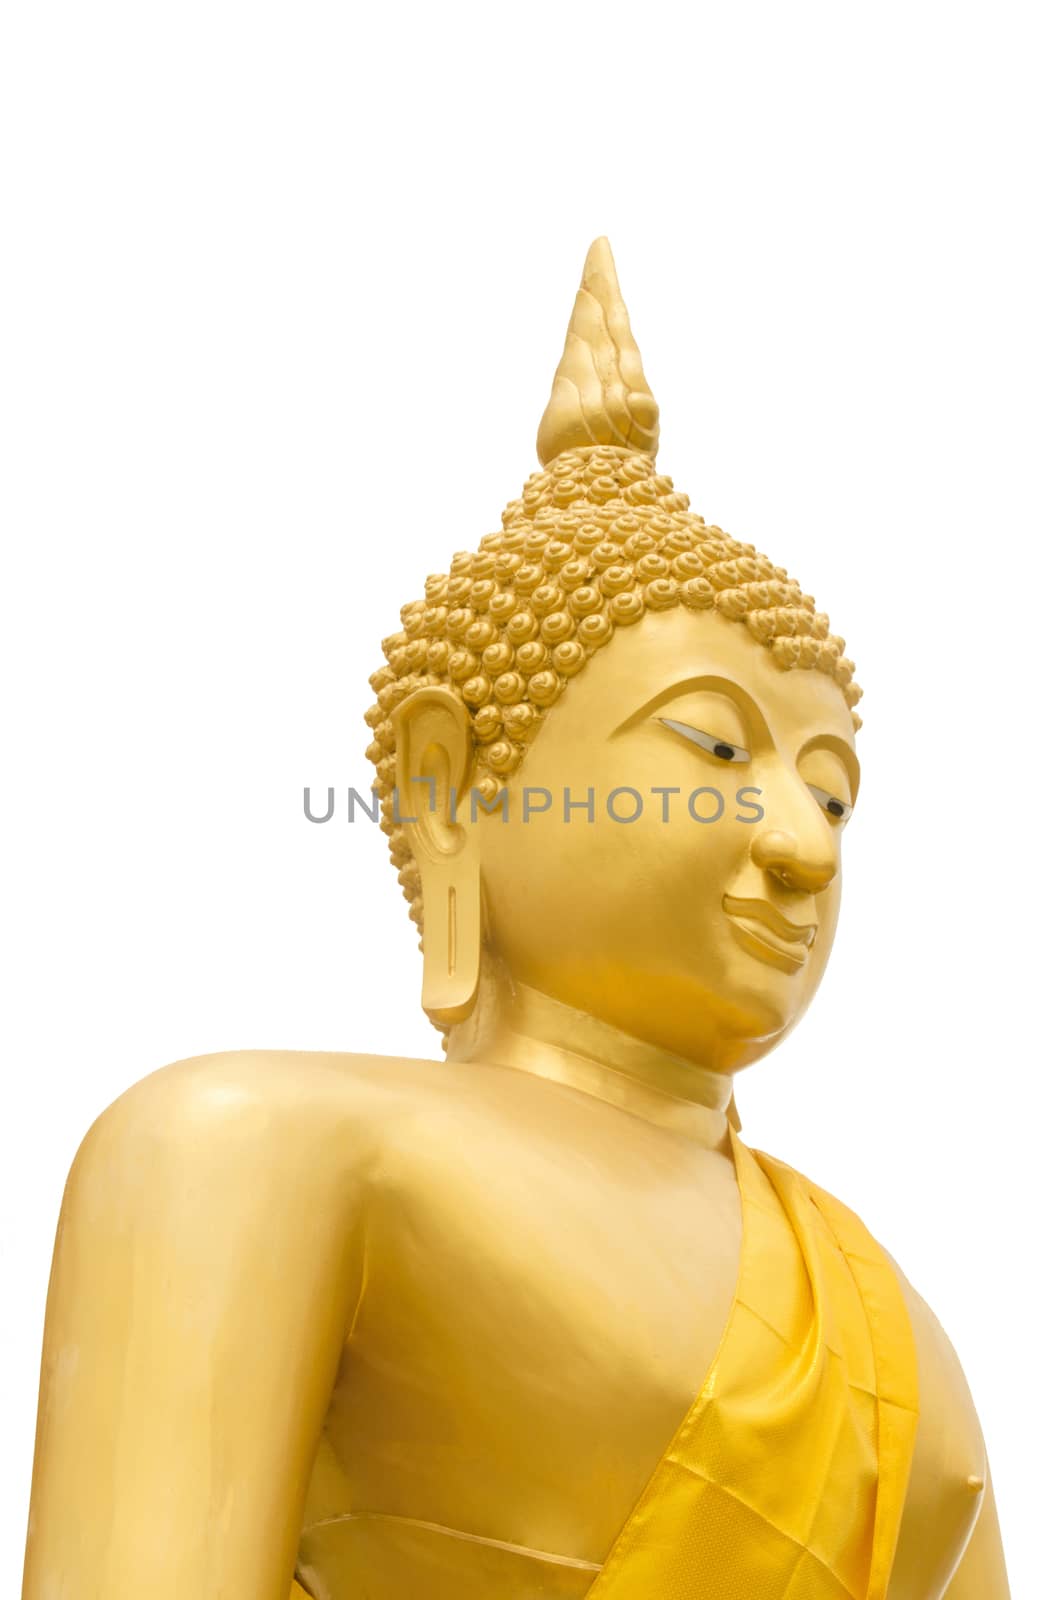 Seated Buddha Image by kobfujar